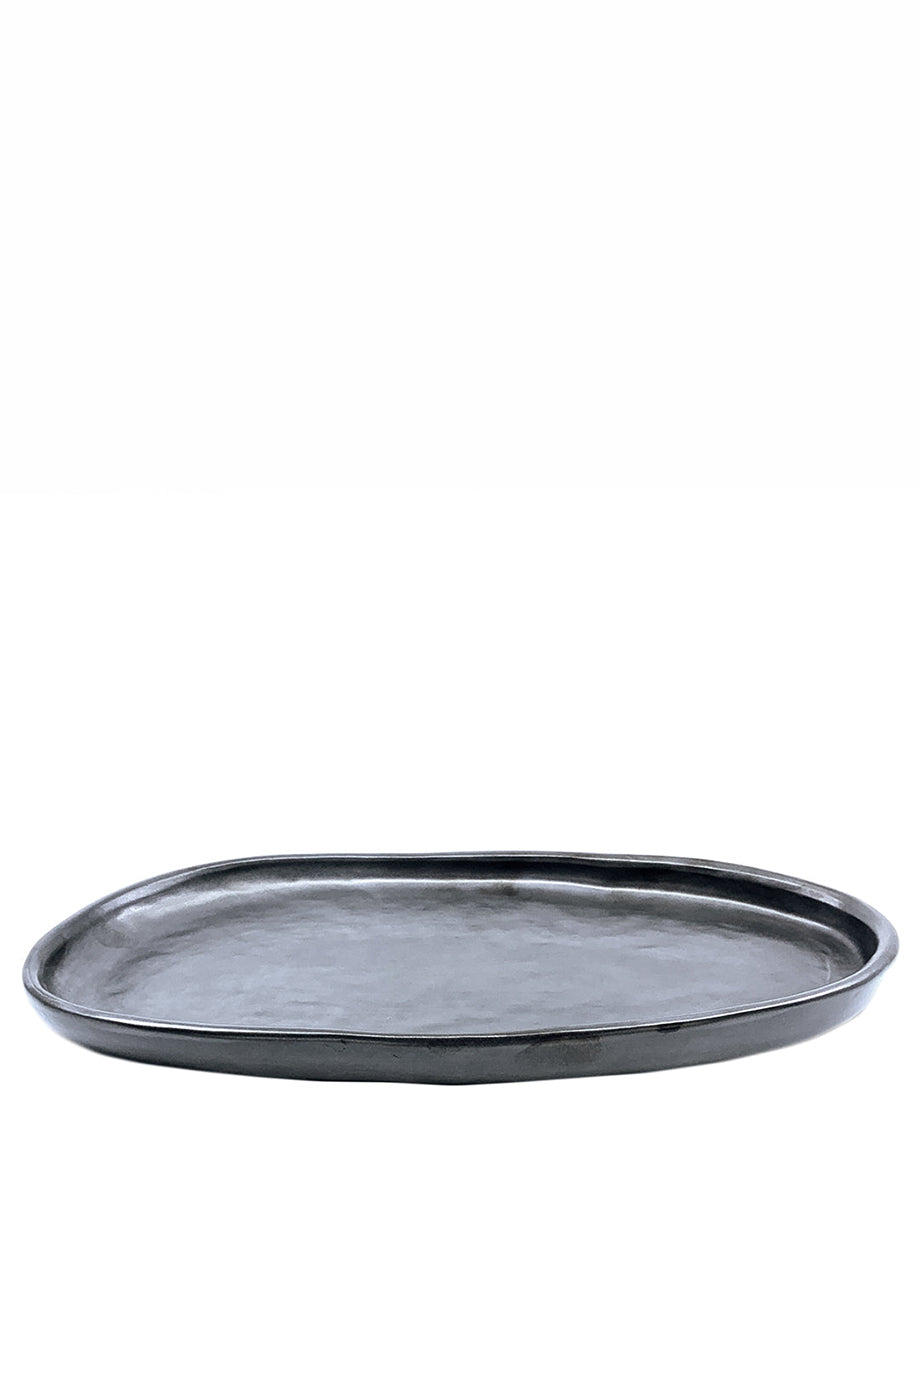 Husk Oval Platter - Slate